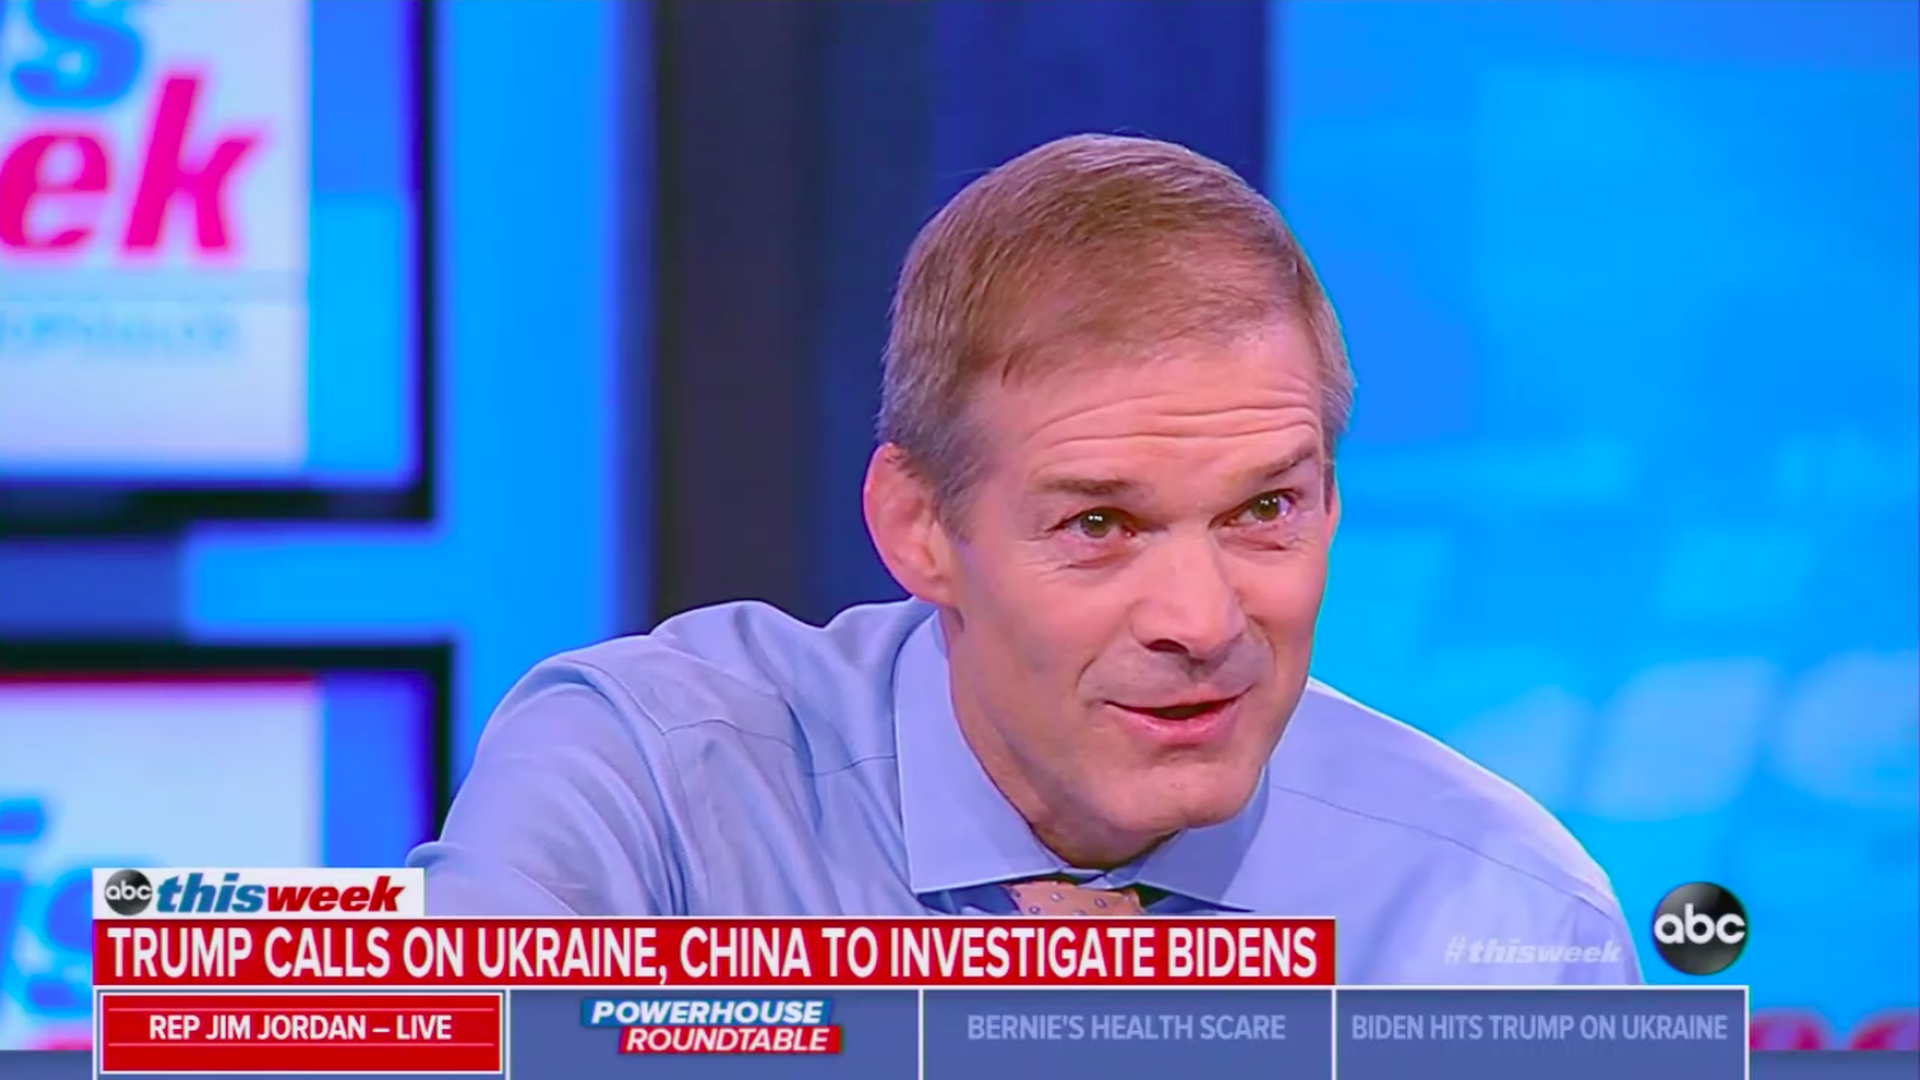 Rep. Jim Jordan suggests Trump was joking about China investigating Bidens - Axios